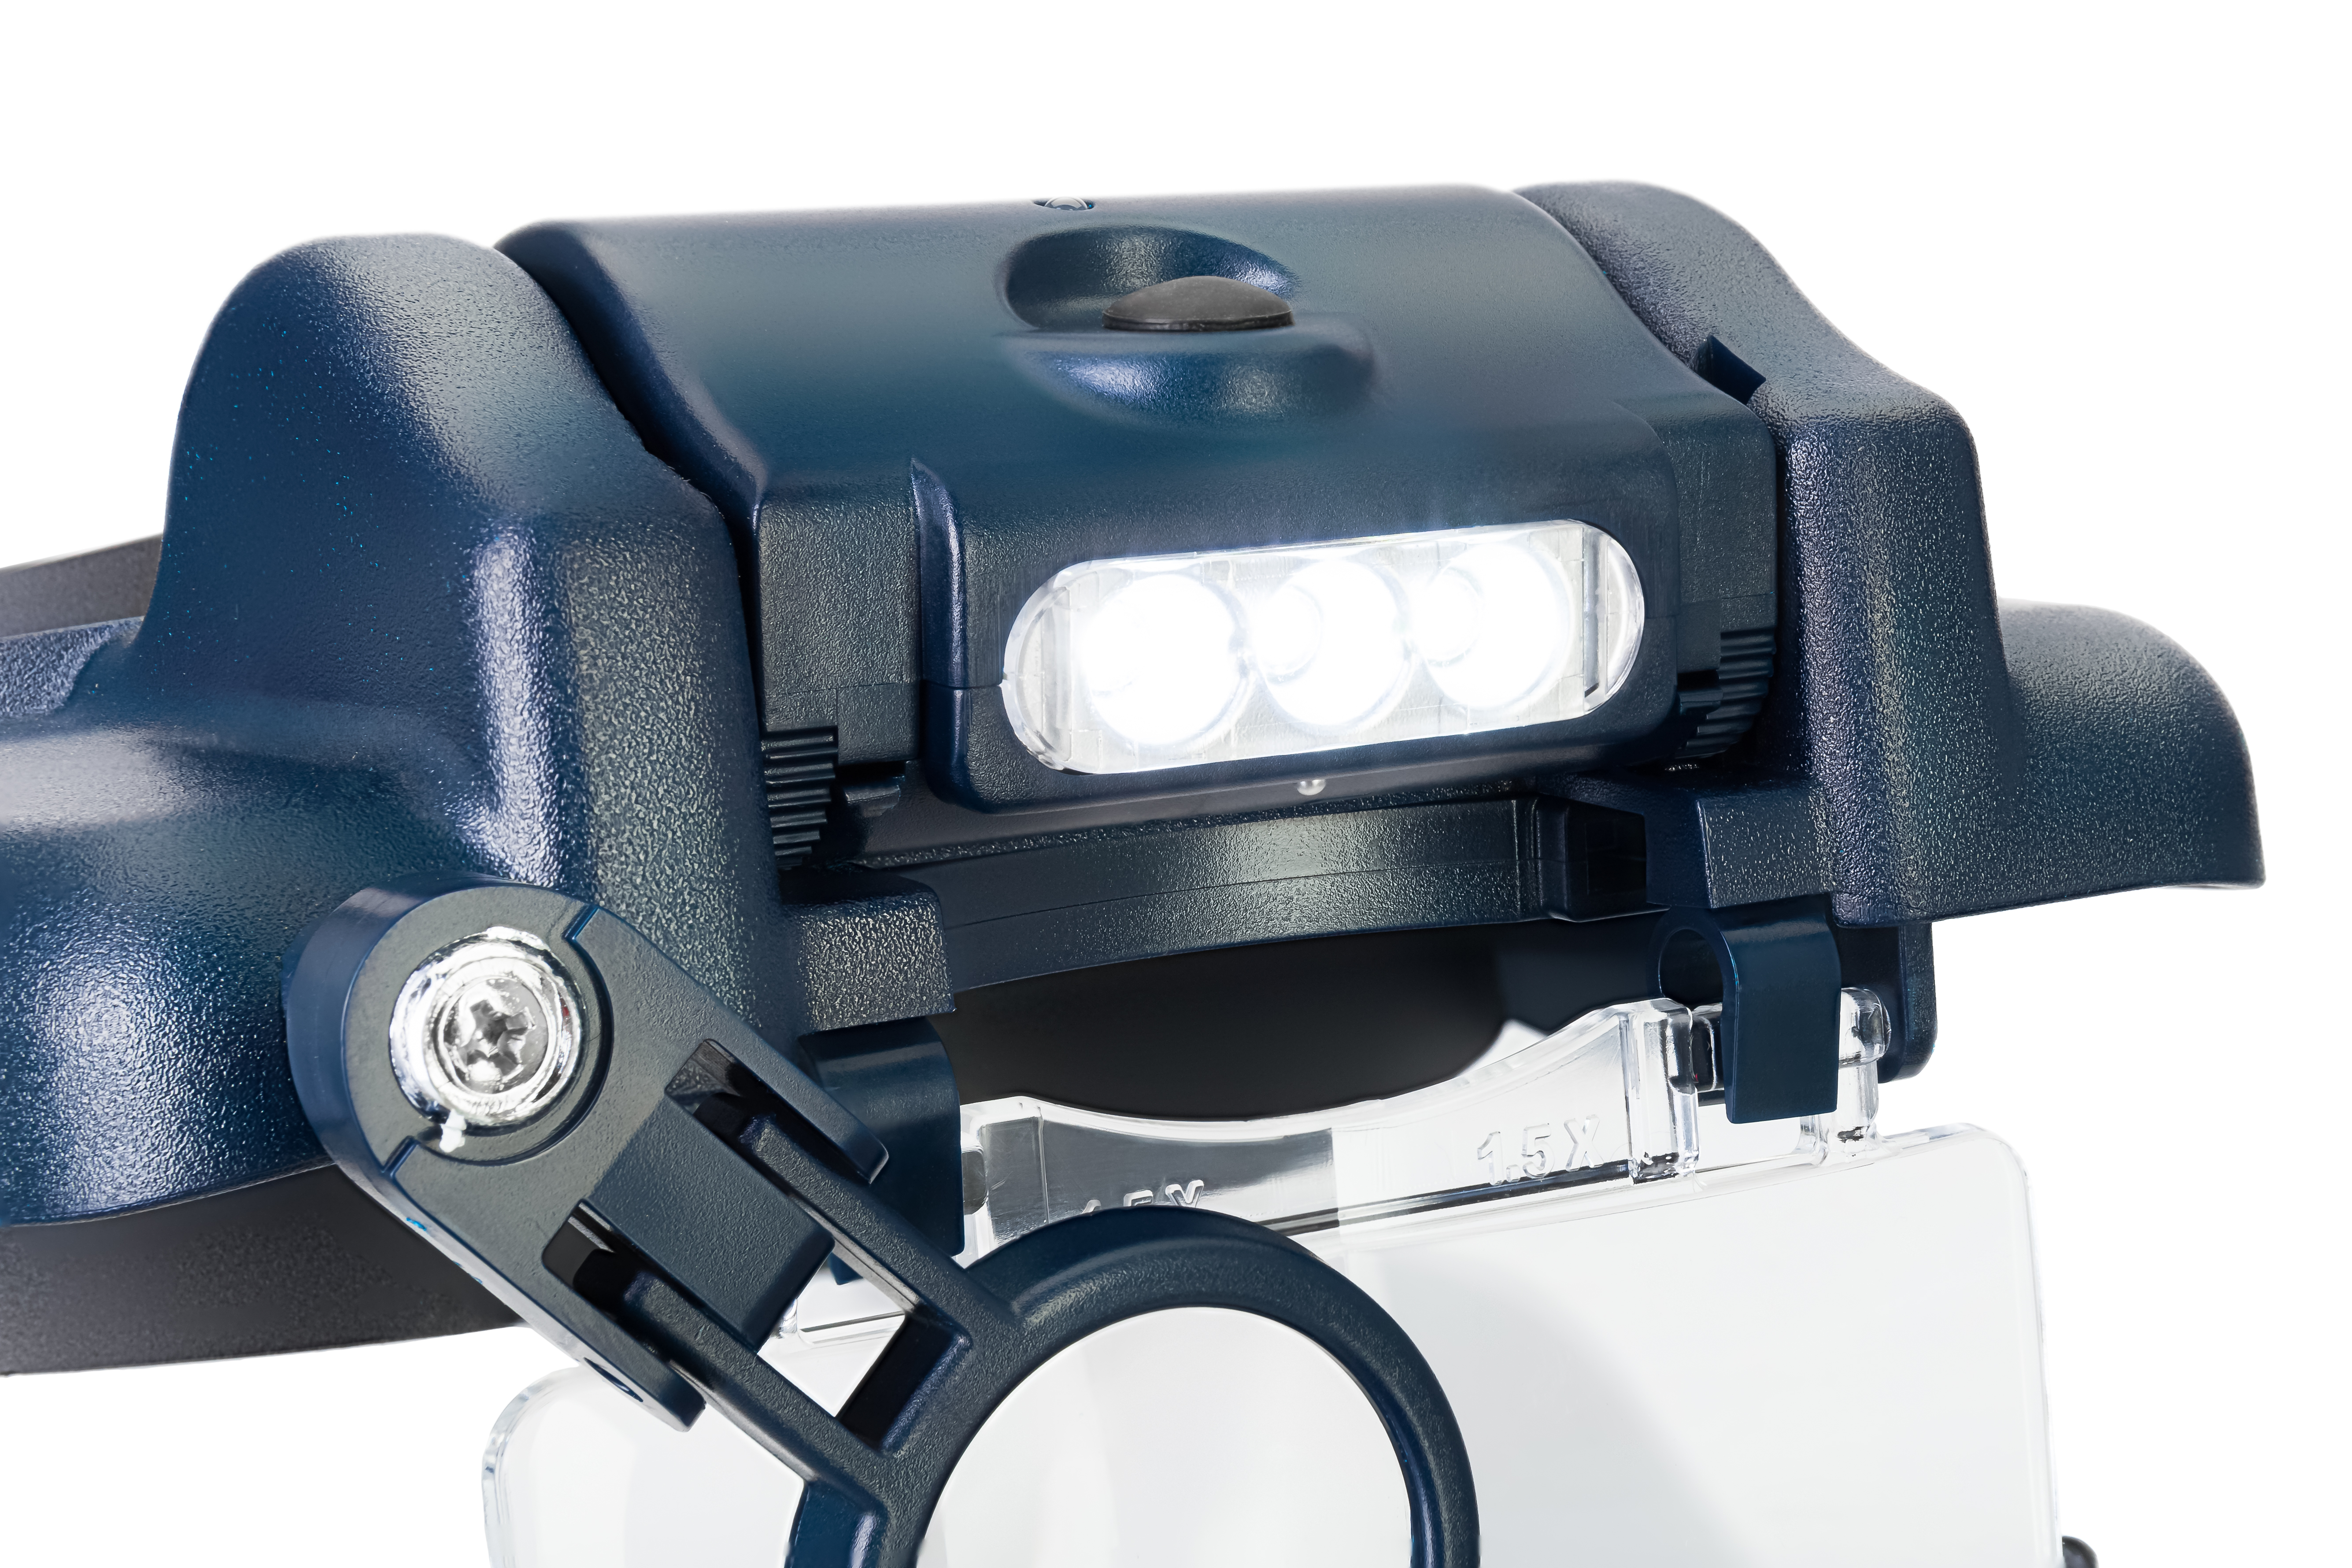 Náhlavní lupa Discovery Crafts DHR 10 s LED osvětlením je ideální pro všechny uživatele, který vyžadují maximální flexibilitu a přesnost práce.